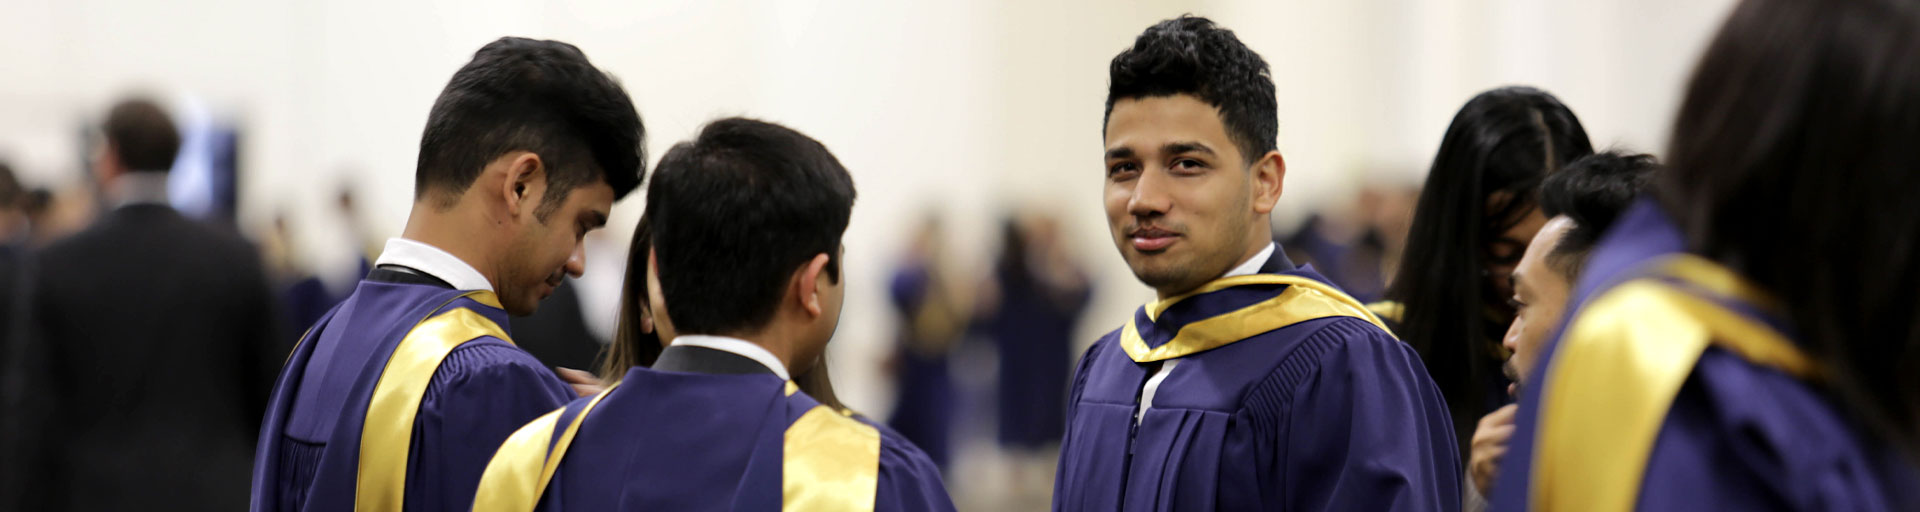 graduation student looking at camera